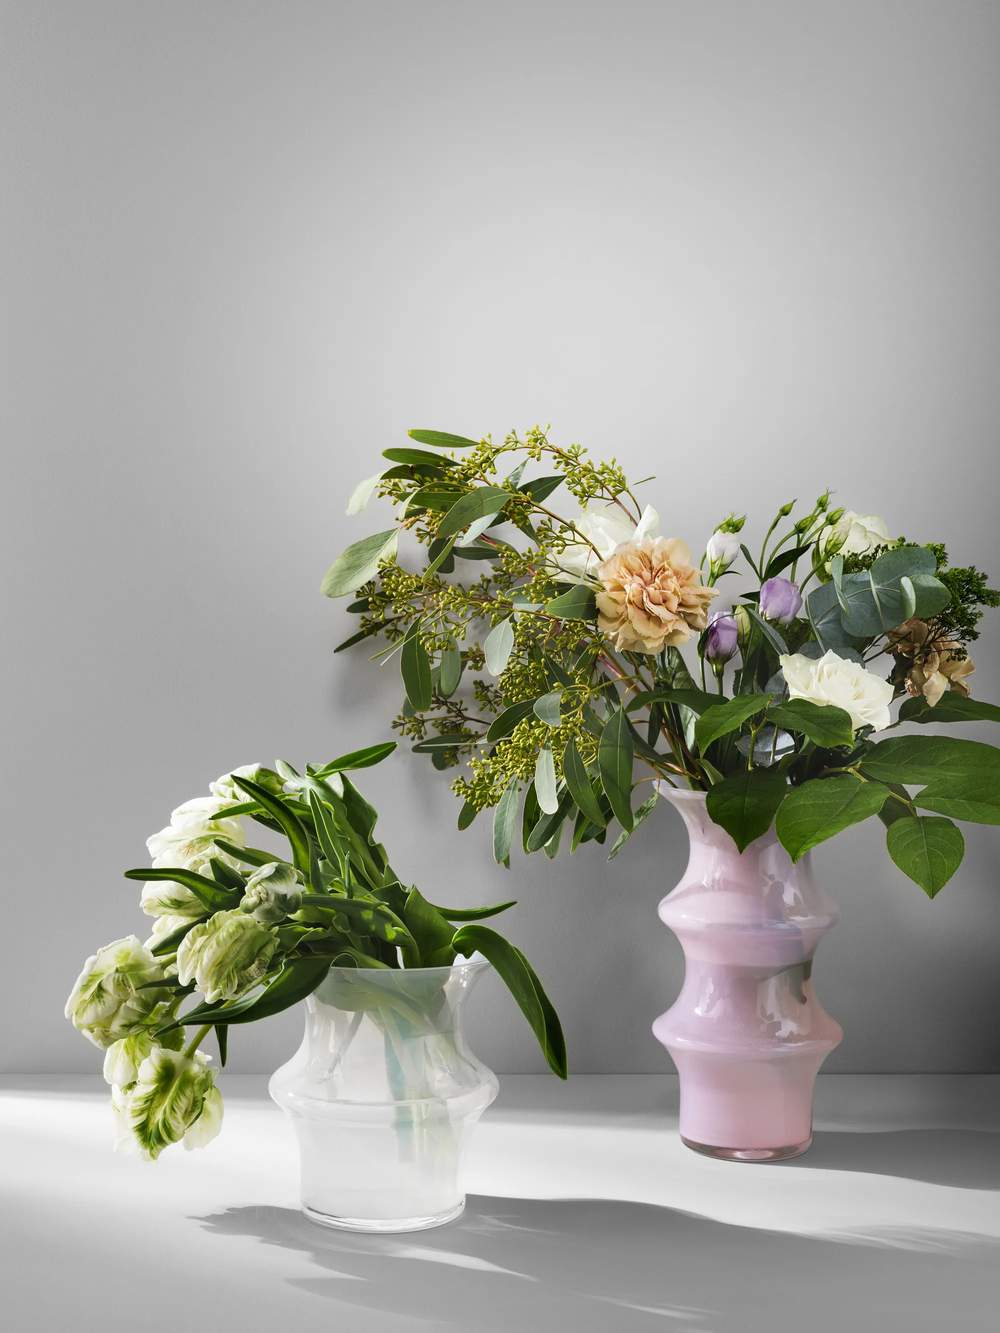 Pagod Vase, lyserød, large